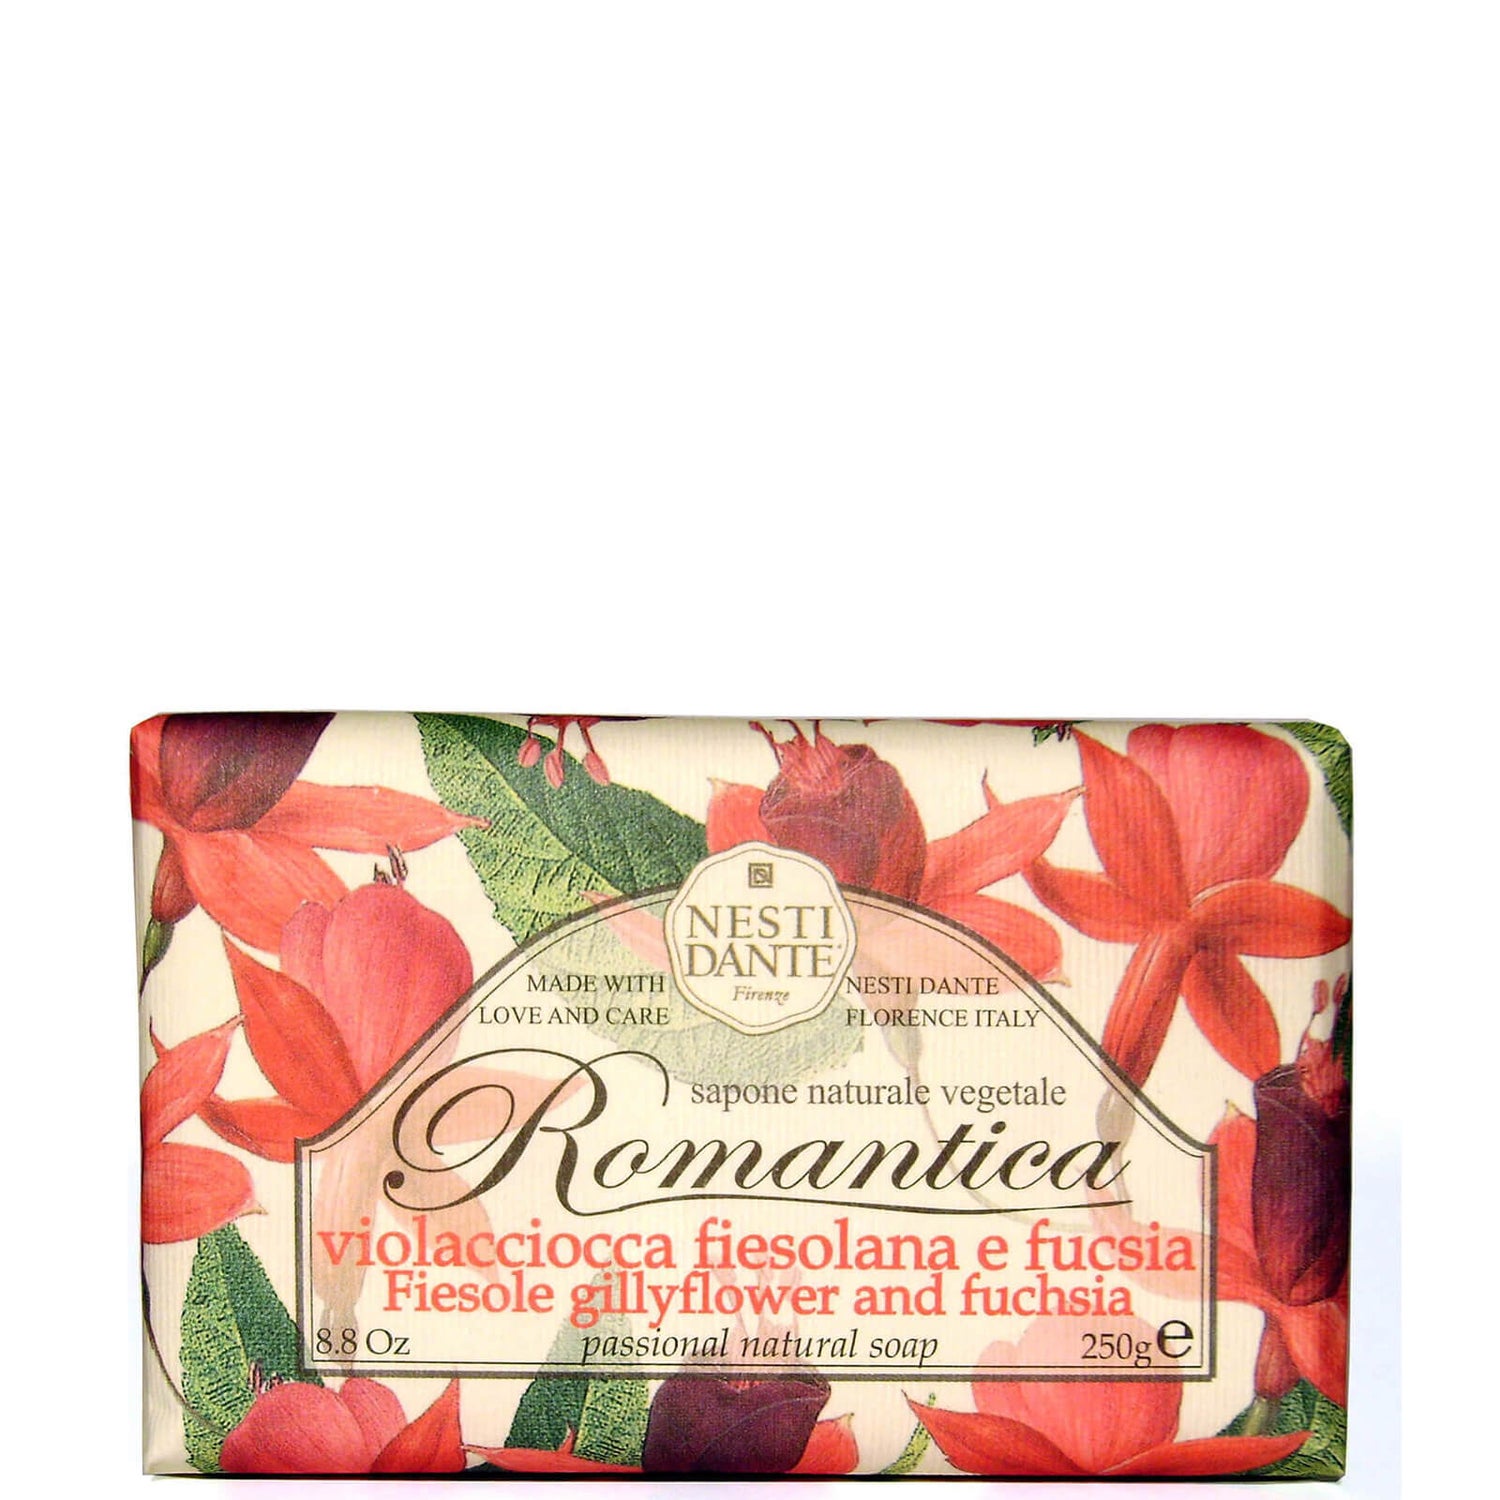 Nesti Dante Romantica Gillyflower and Fuchsia Soap 250g